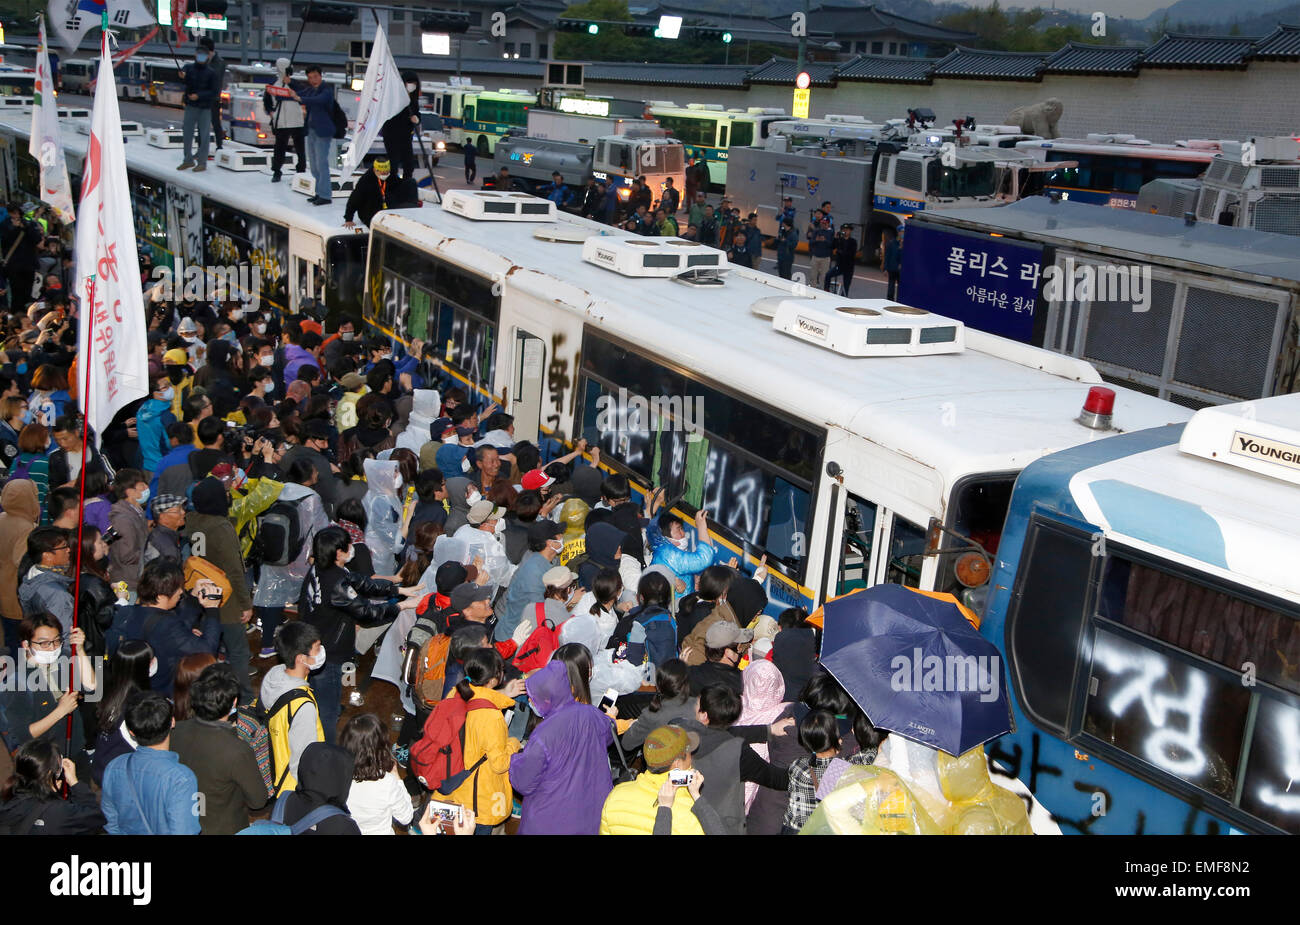 Traghetto tragedia protesta, Apr 18, 2015 : manifestanti spingere gli autobus della polizia poste dalla polizia per arrestare la loro marcia verso la porta di Gwanghwamun vicino alla presidential Blue House a Seul, in Corea del Sud. Circa 30.000 persone (8.000 dalla polizia stima) hanno dimostrato il 18 aprile, due giorni dopo il primo anniversario del traghetto Sewol tragedia ad esigere che il governo avanzi la speciale legge Sewol decreto di attuazione, recupero del traghetto e tenere una approfondita indagine nella tragedia. Essi hanno anche chiamato per dimissioni del Presidente Parco-geun hye.La polizia ha imprigionato circa 100 manifestanti durante la protesta. (Foto b Foto Stock